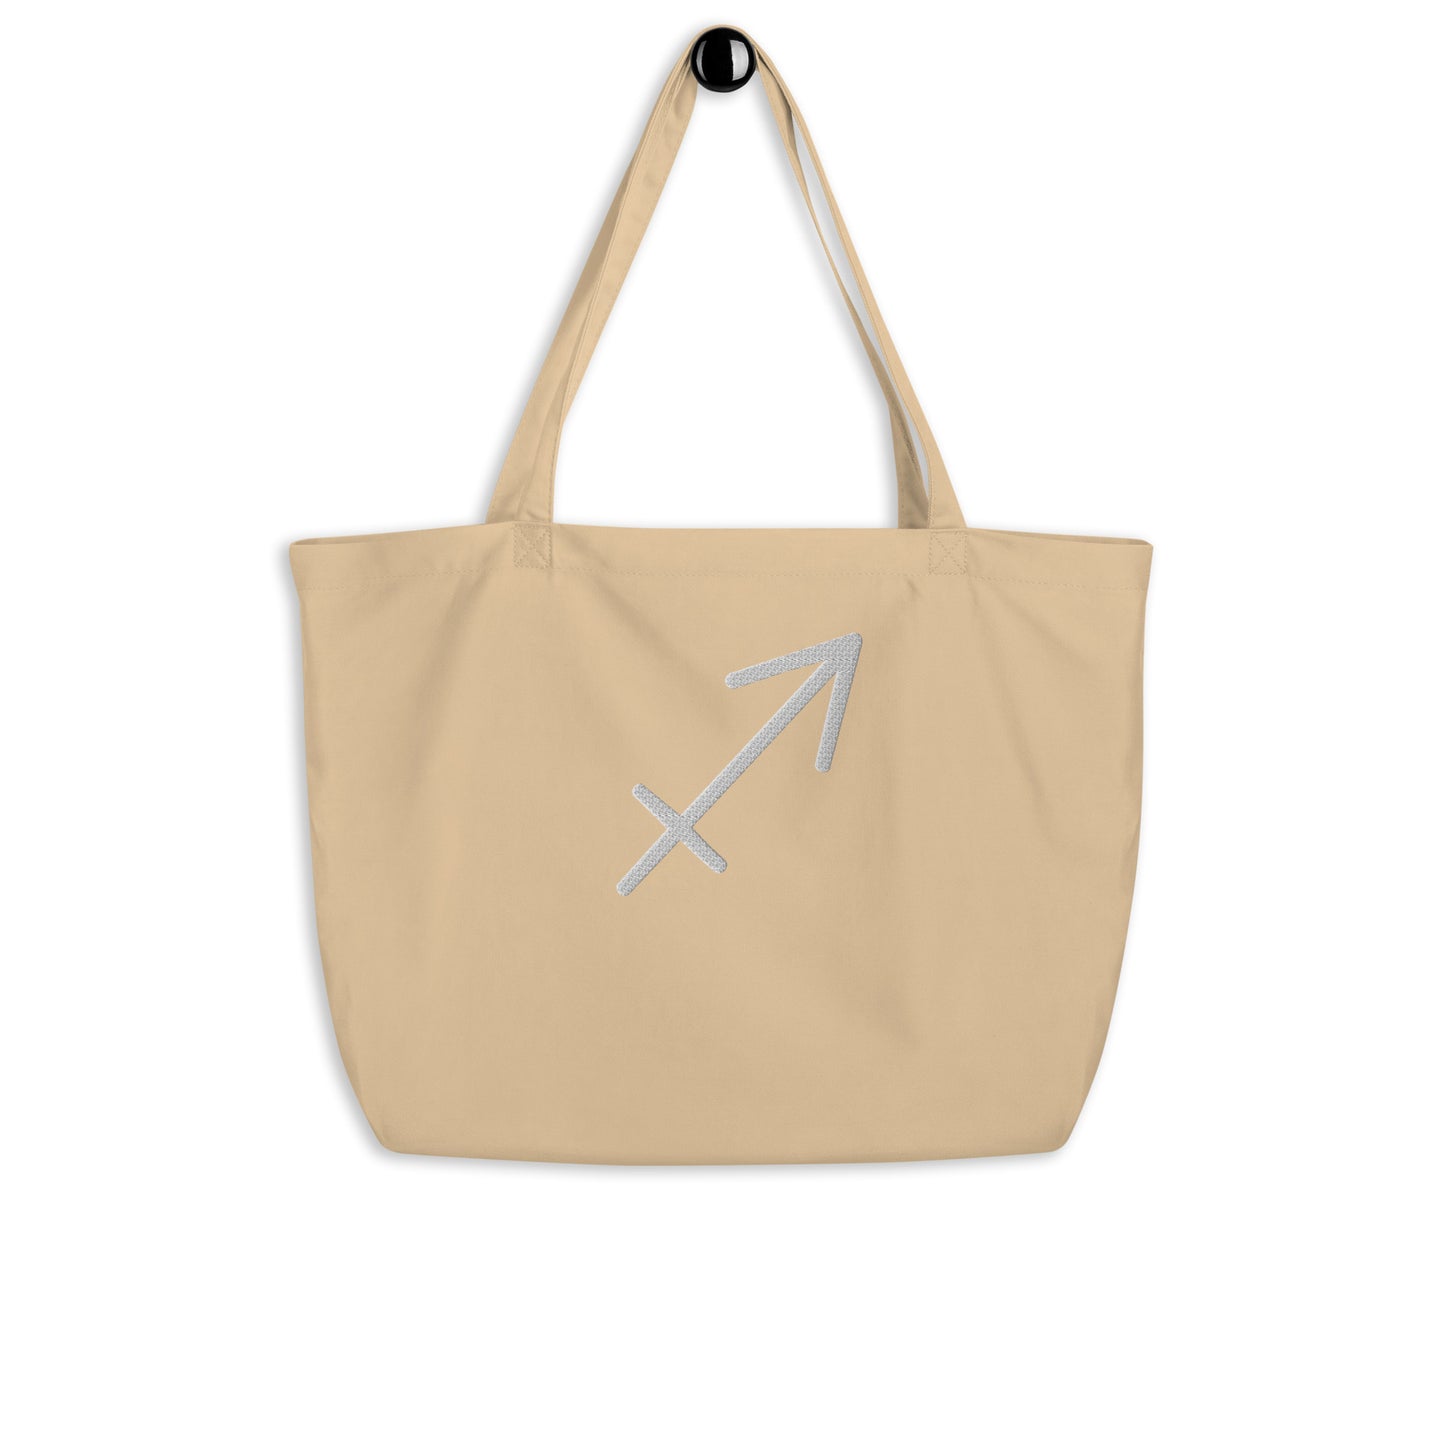 Sagittarius - Large Open Tote Bag - White Thread